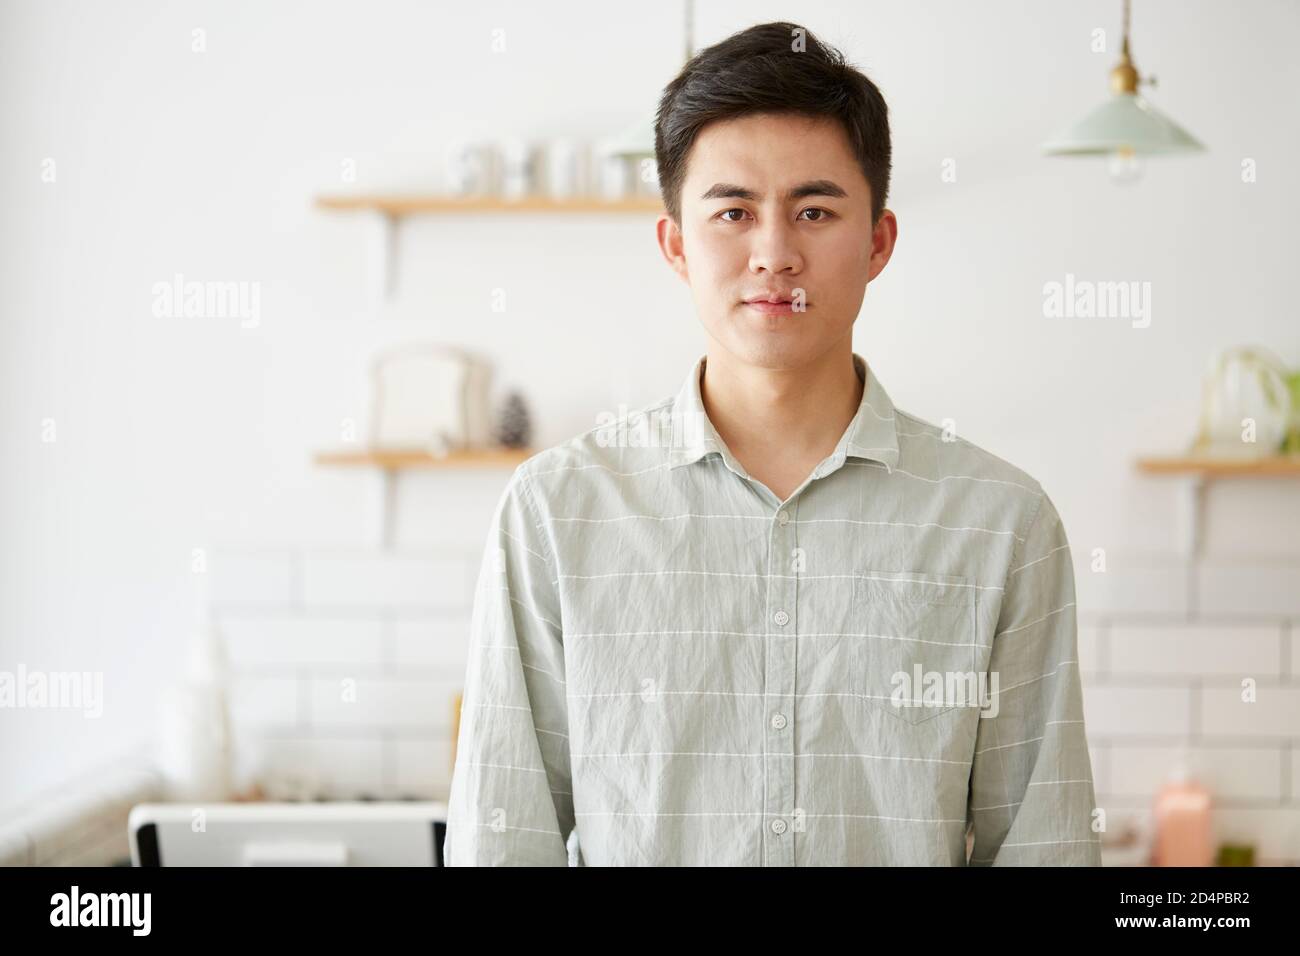 portrait d'un jeune homme asiatique regardant l'appareil photo Banque D'Images